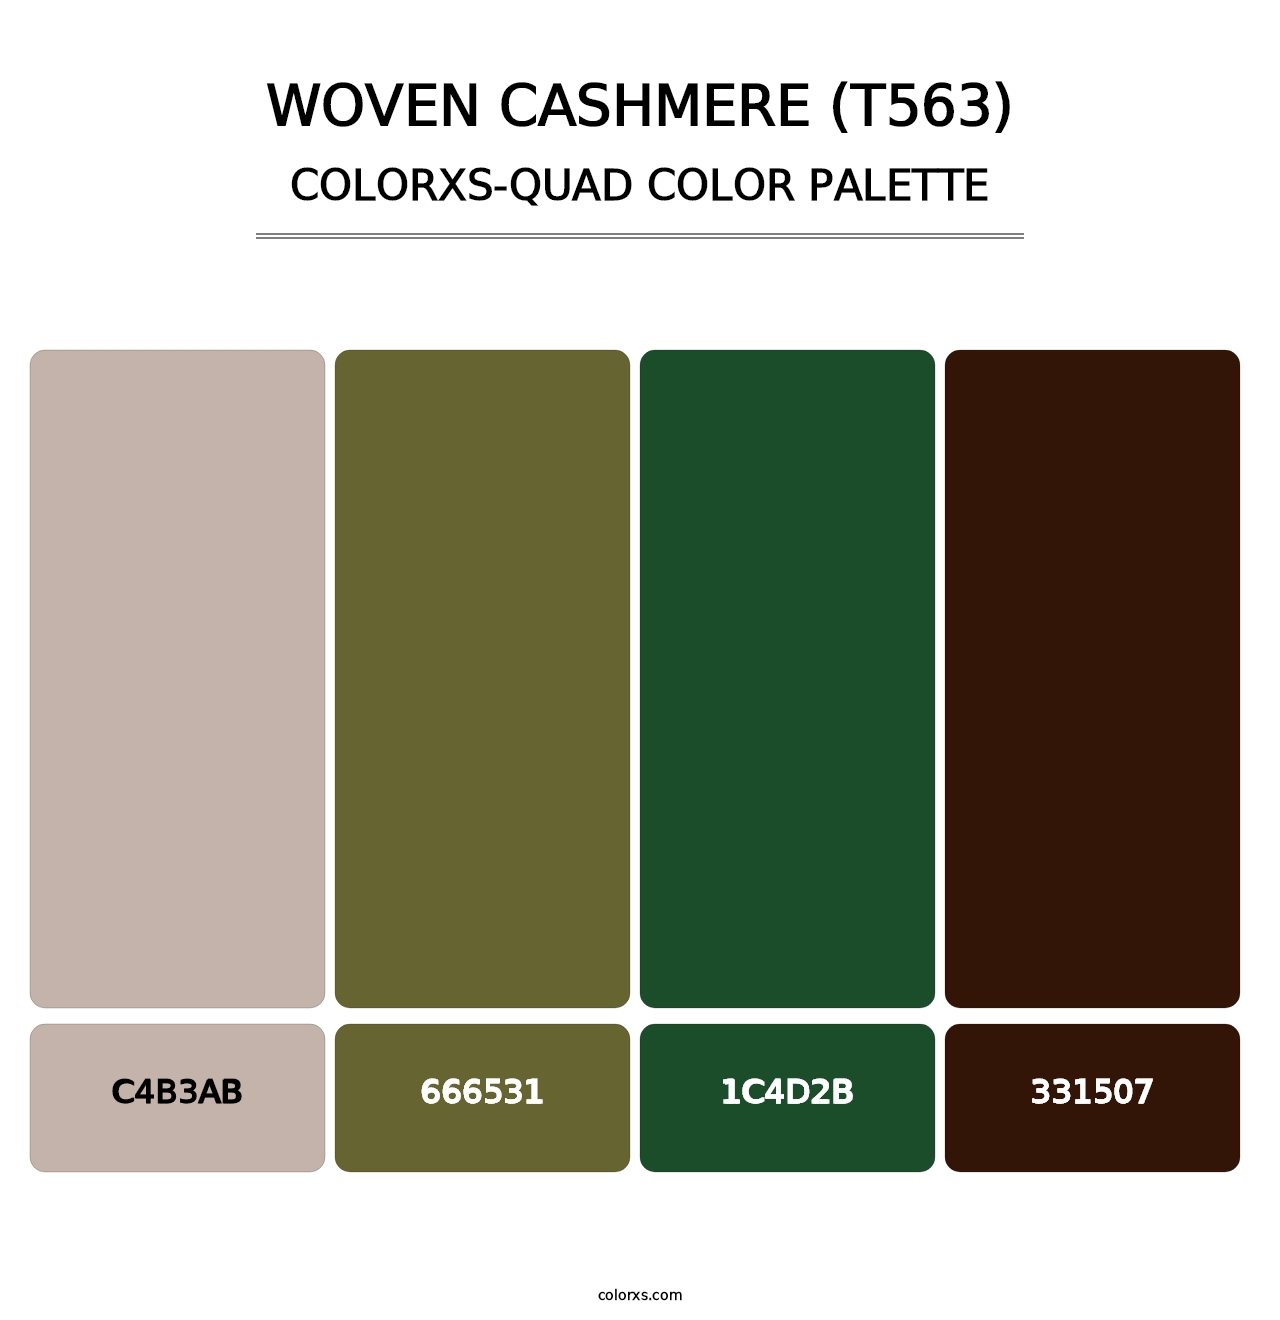 Woven Cashmere (T563) - Colorxs Quad Palette